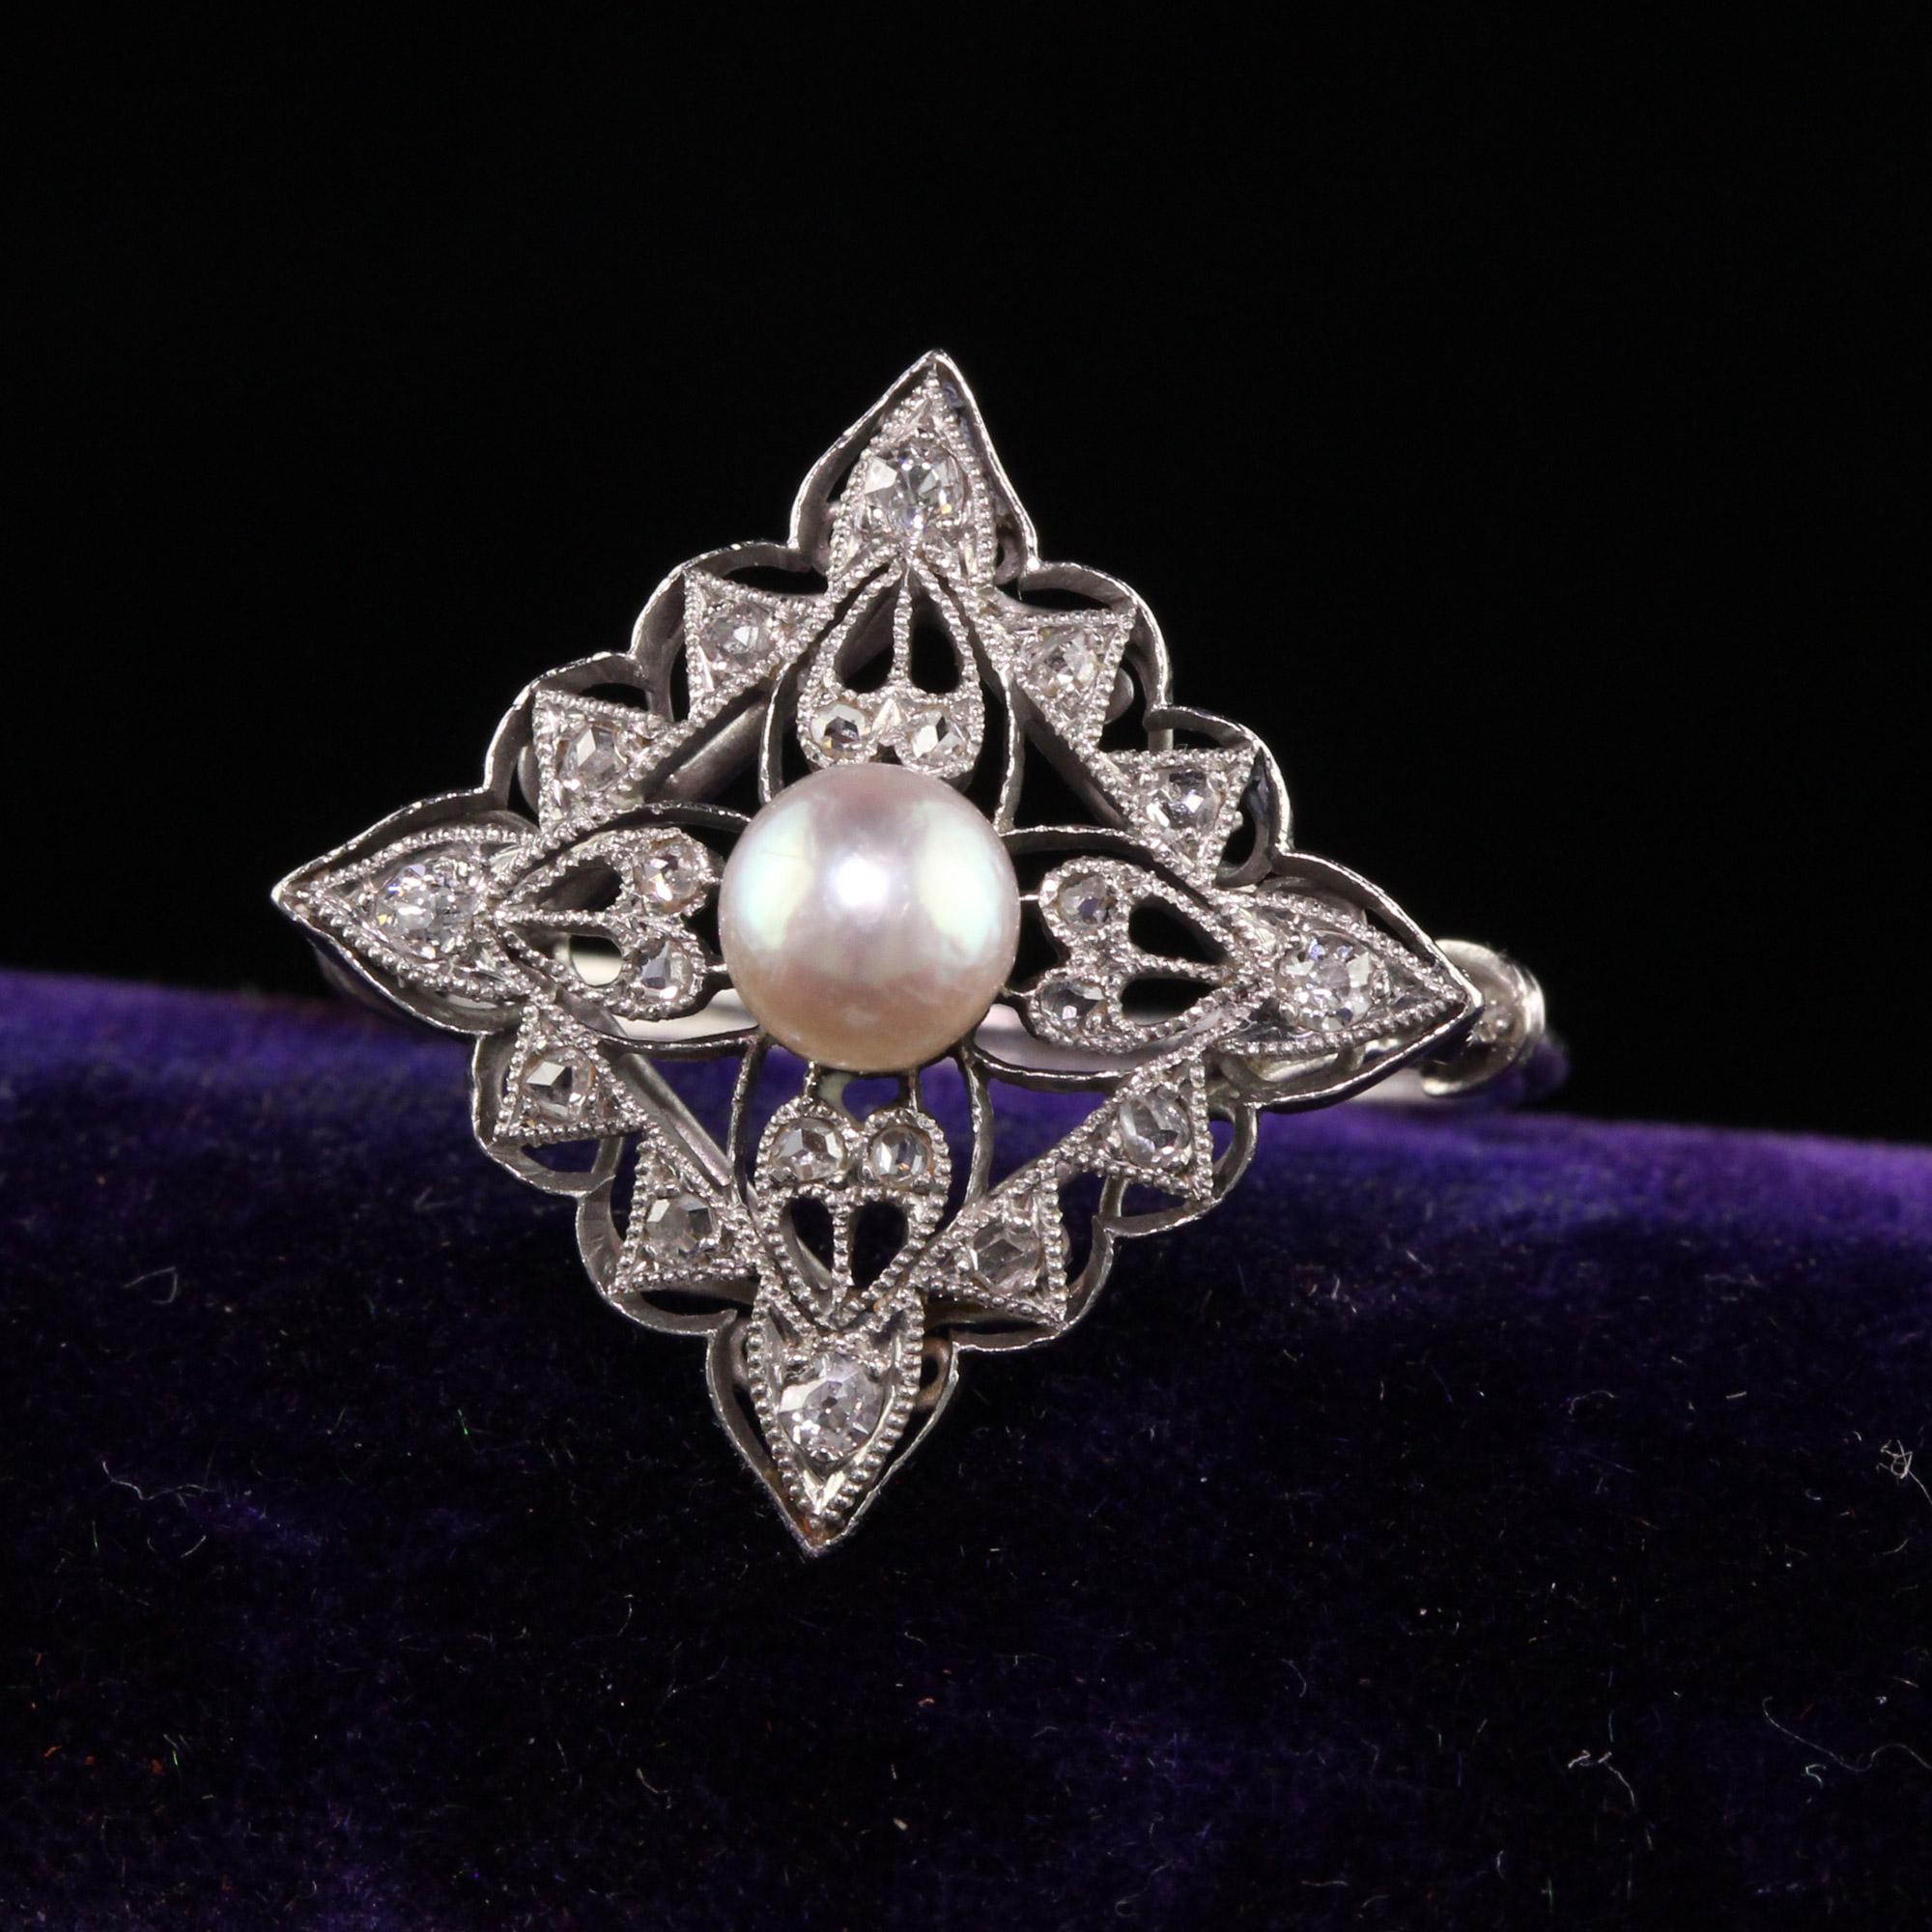 Schöne antike Edwardian Französisch Platin Rose Cut Diamond Pearl Ring. Dieser schöne Ring hat Rosenschliff und eine Perle in der Mitte eines Rings, der in Platin gefertigt ist. Auf dem Schaft befindet sich eine Eulenmarkierung, die darauf